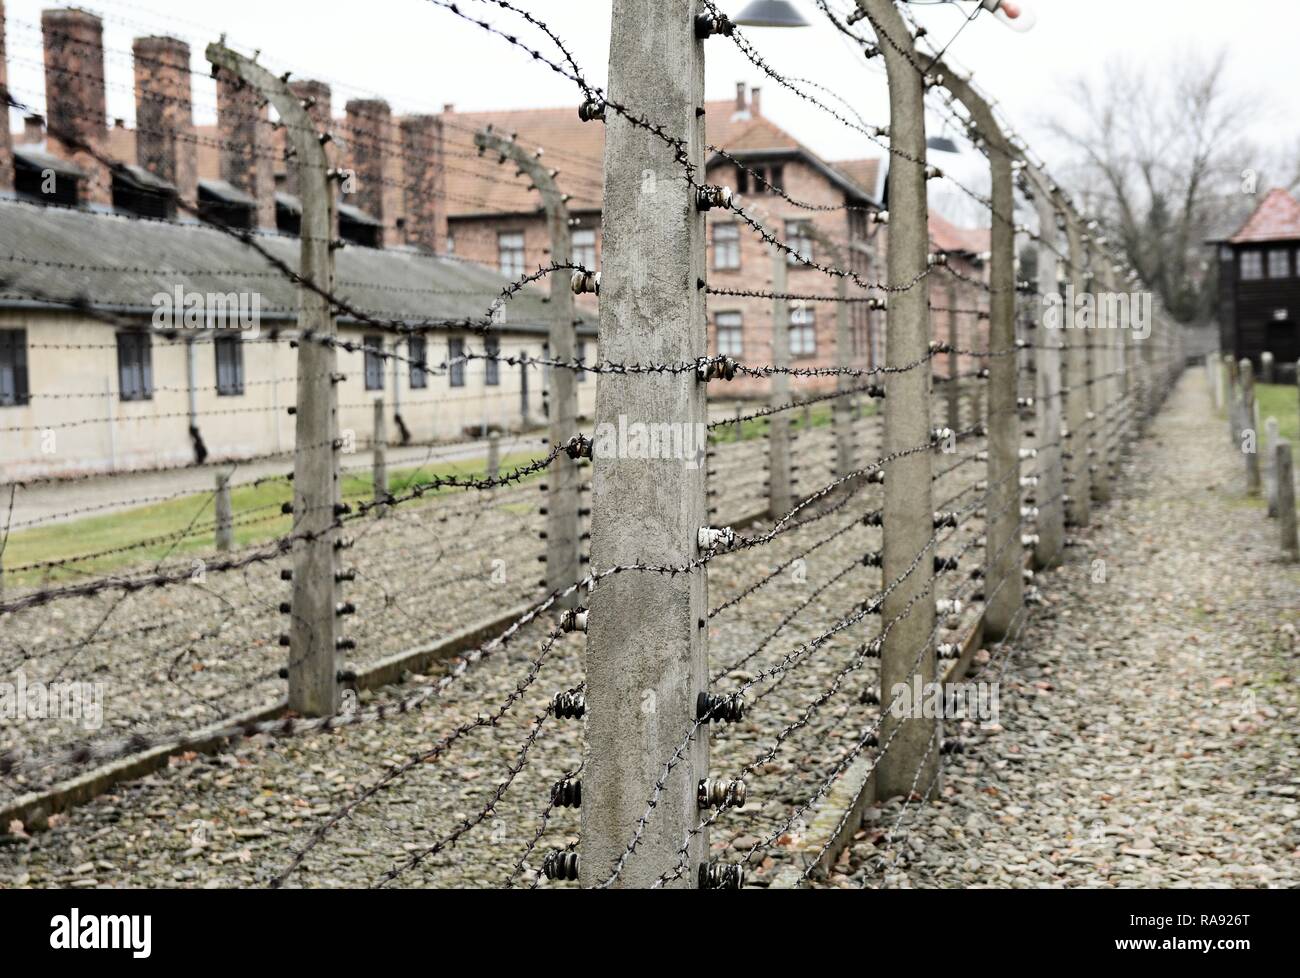 OSWIECIM, Polen - 07 Dezember, 2018: Auschwitz I Holocaust Memorial Museum. Auschwitz I ist das Lager der nationalsozialistischen Konzentrations- und Vernichtungslager Stockfoto